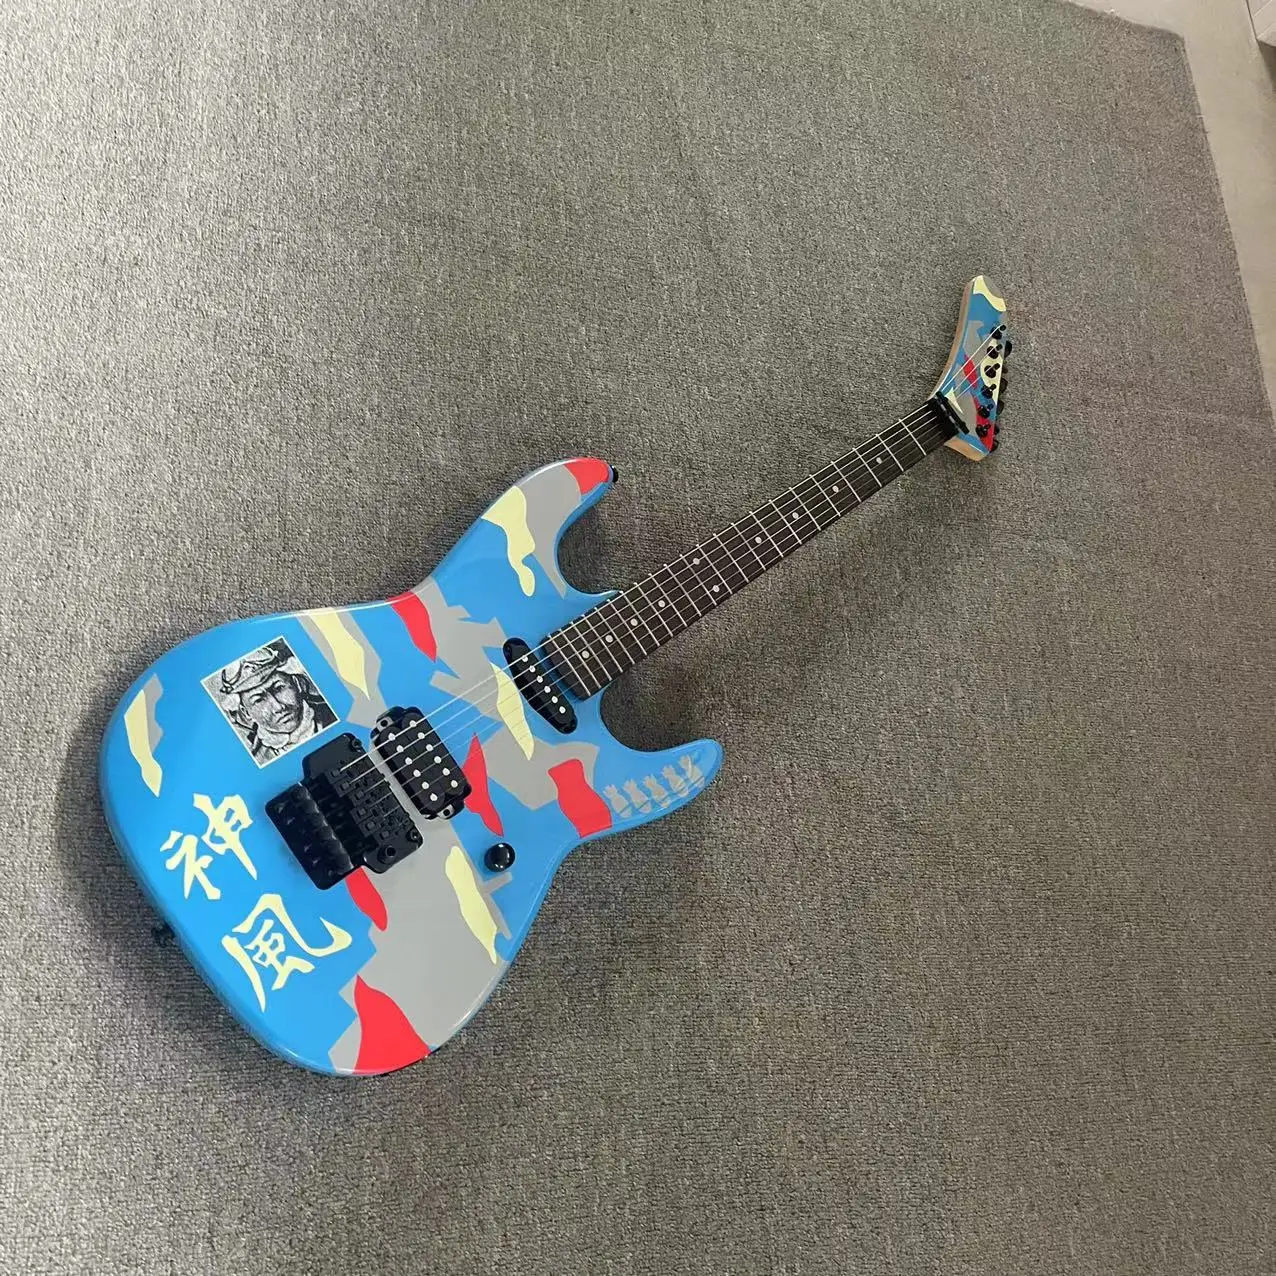 

6-струнная электрическая гитара Blue Shenfeng, разделенная электрическая гитара, корпус с ручной росписью, с высоким блеском, наконечник грифа из розового дерева